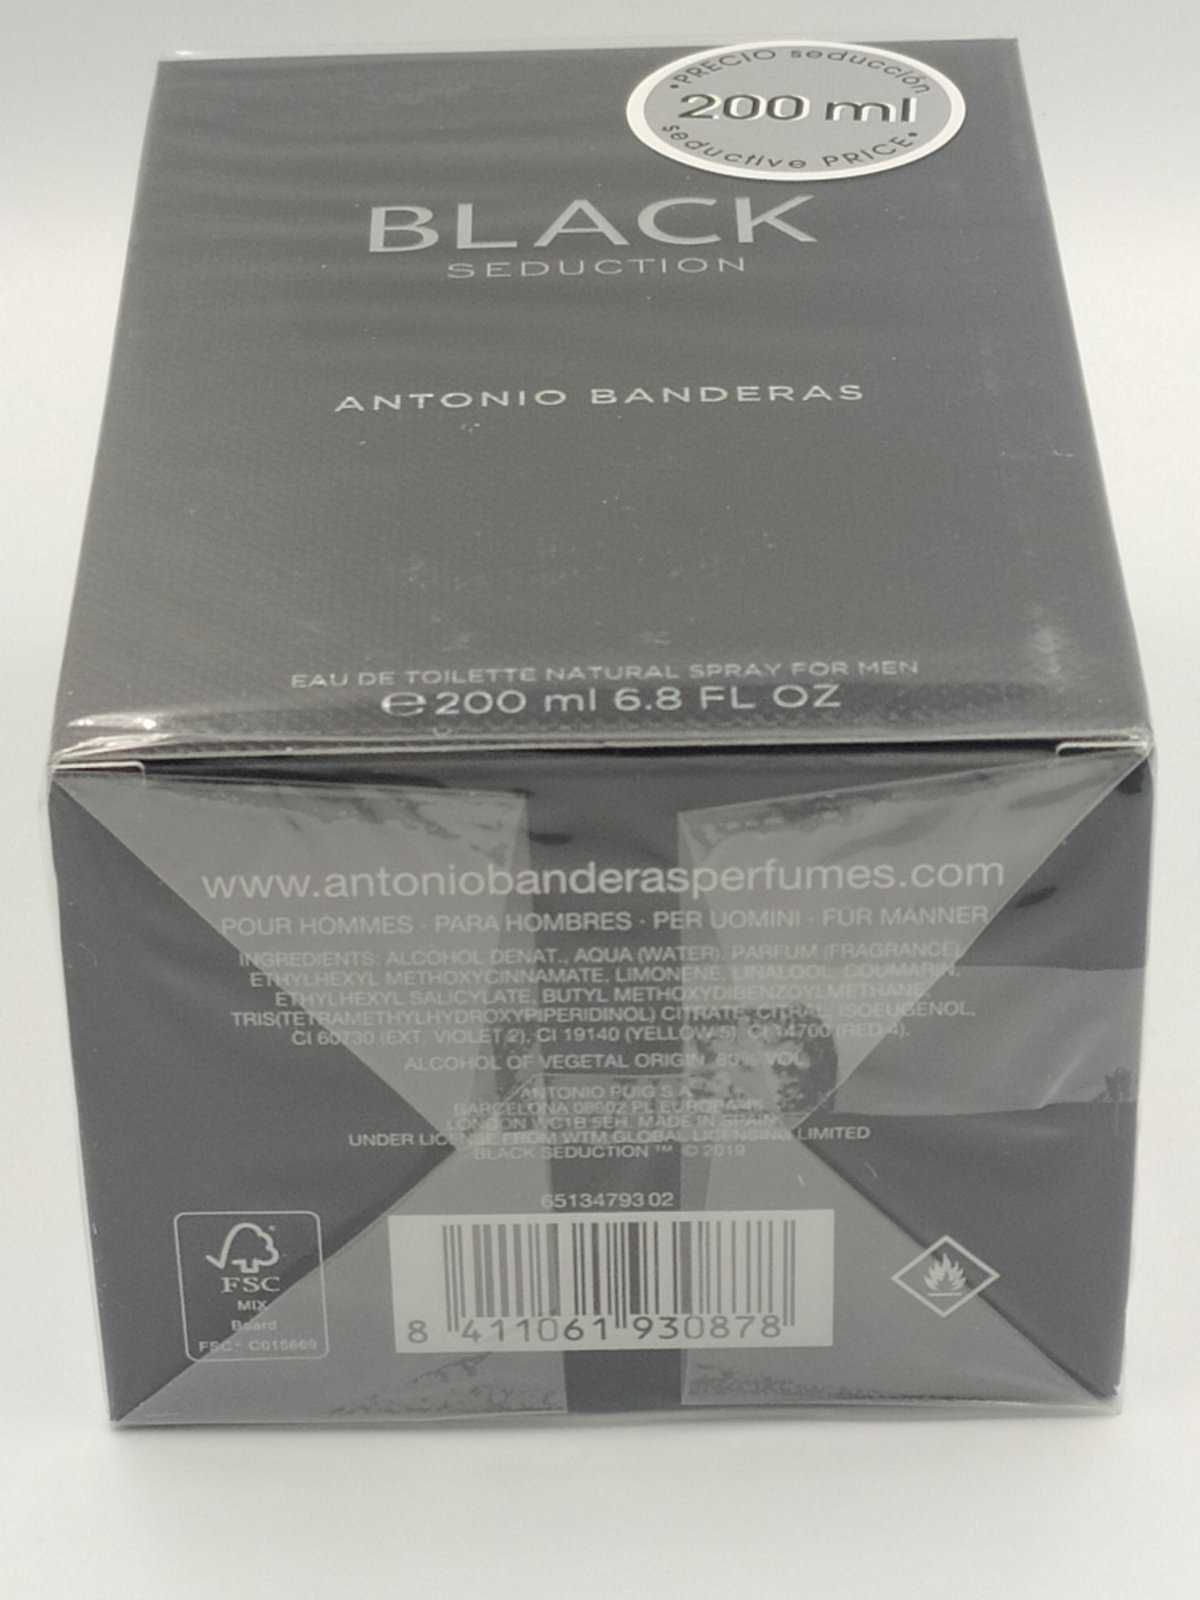 Antonio Banderas Black Seduction for men 200ml Оригинал